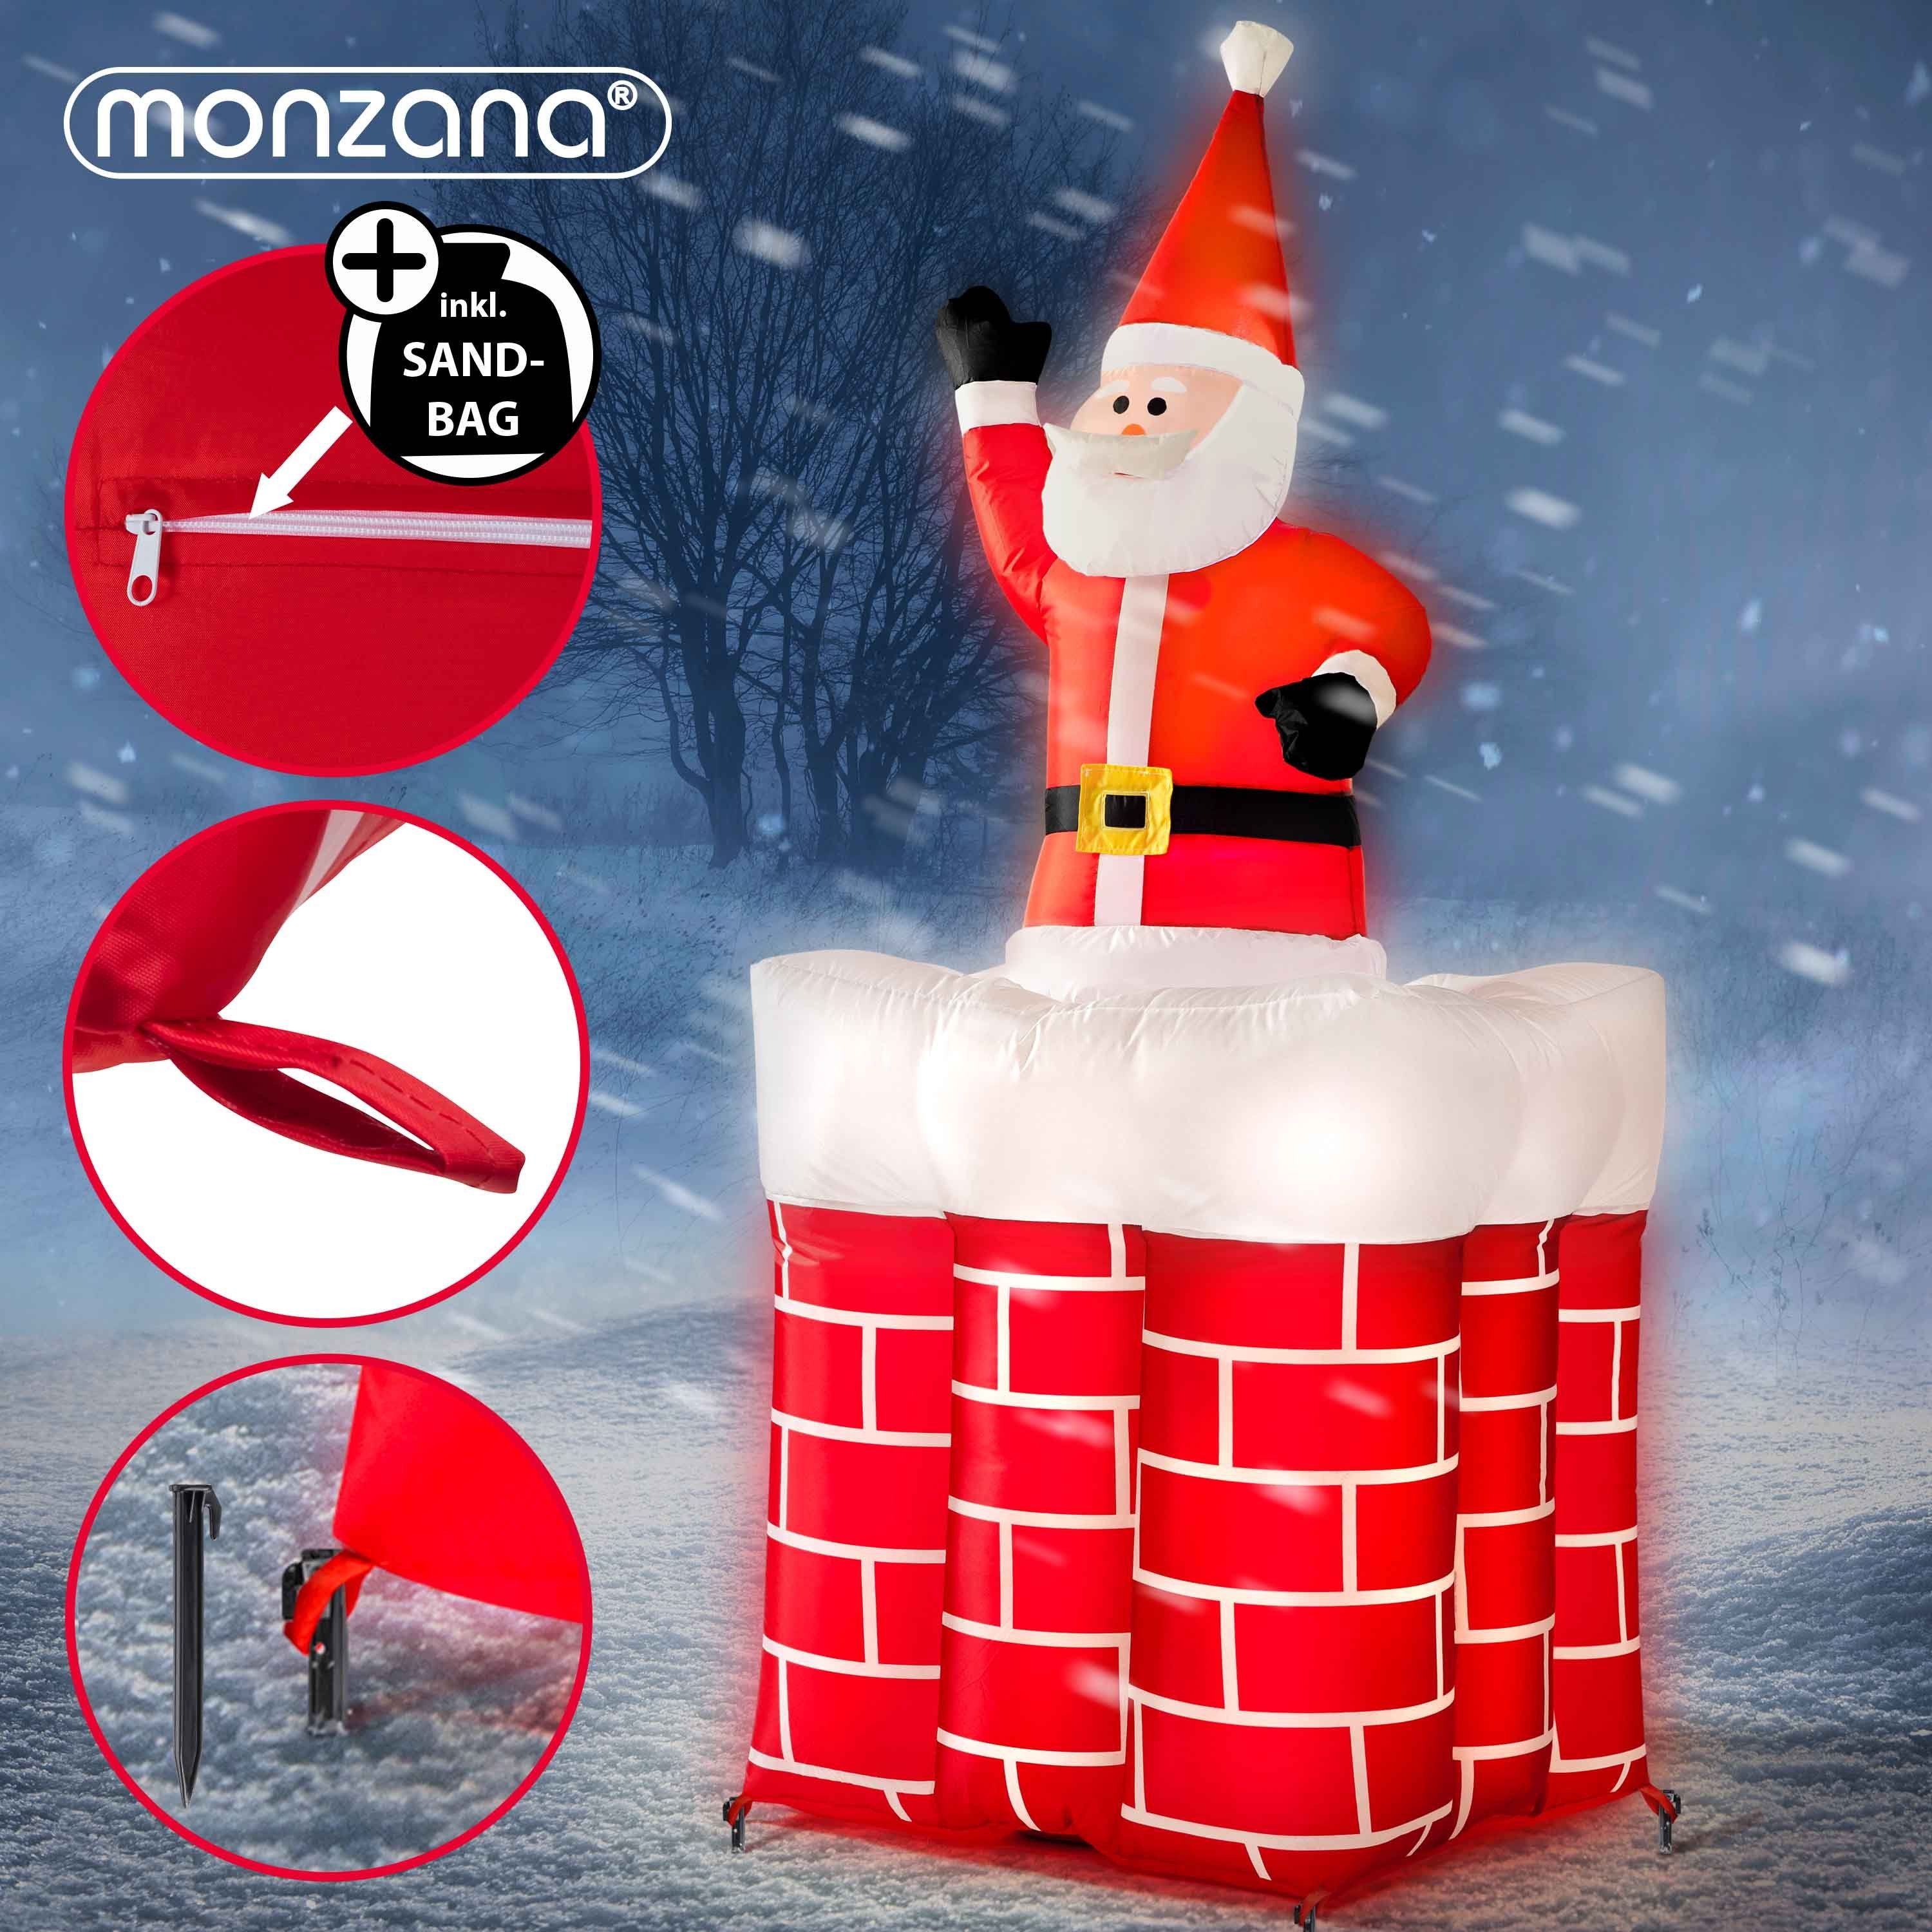 LED monzana groß 178cm Weihnachtsmann, Beleuchtet springt-aus-dem-Schornstein Aufblasbarer